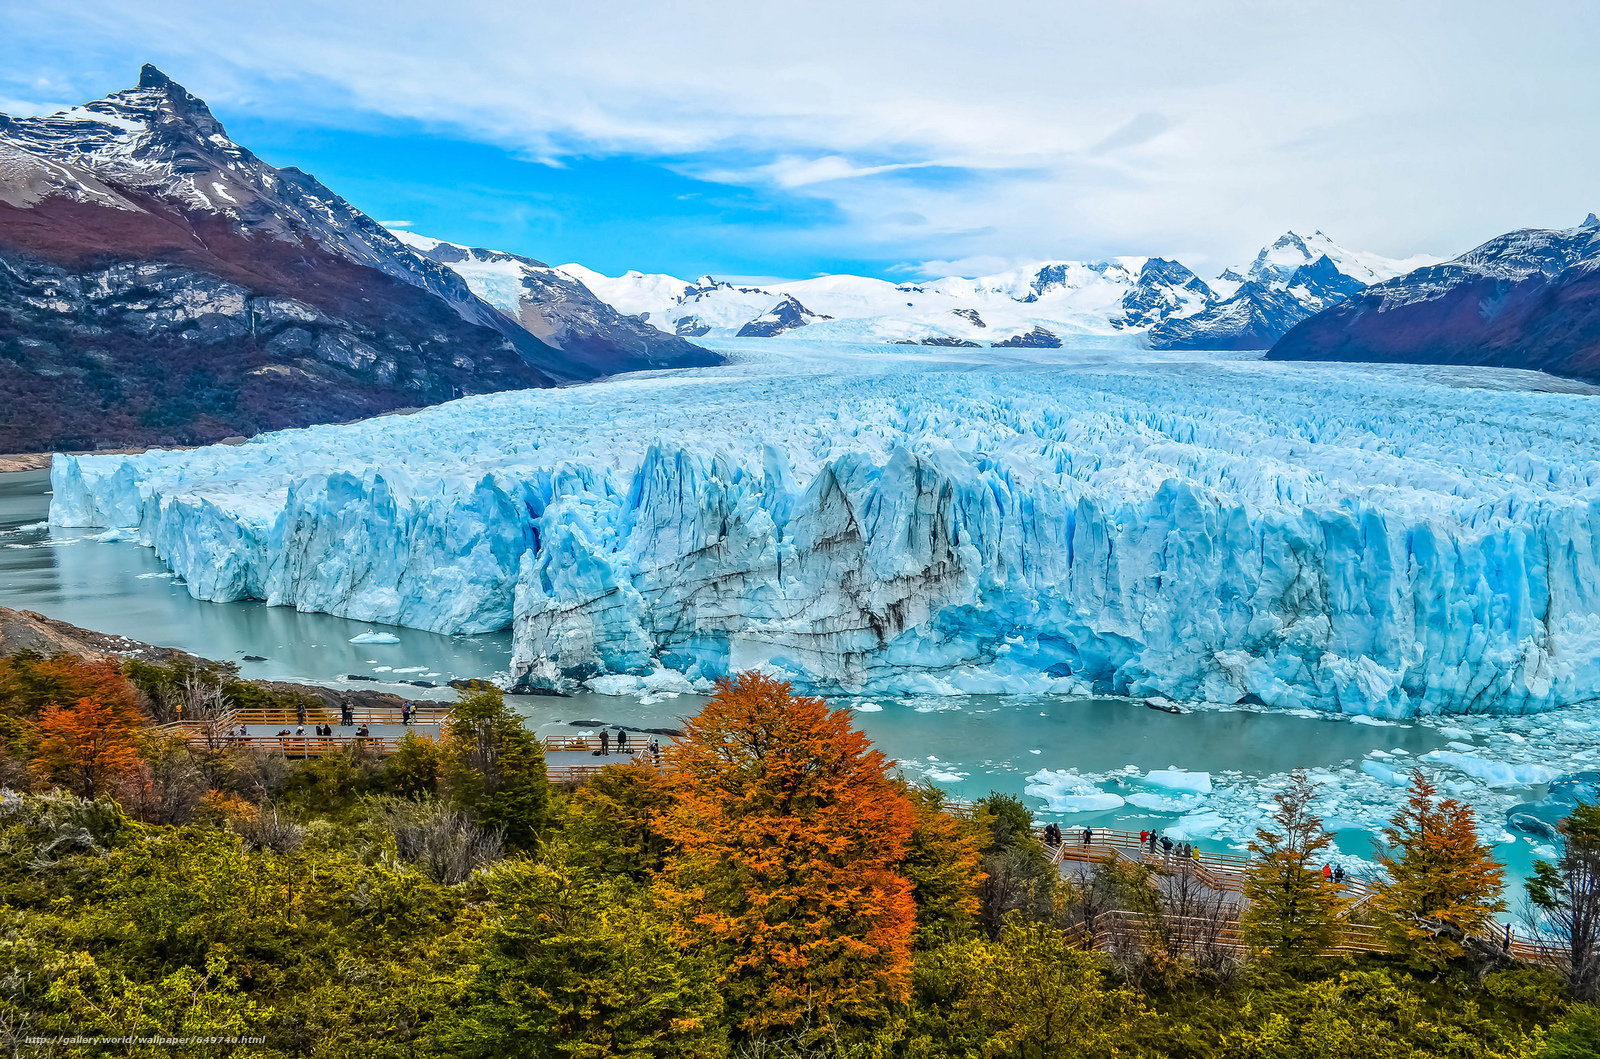 Wallpaper Perito Moreno Is A Glacier Located In The Los